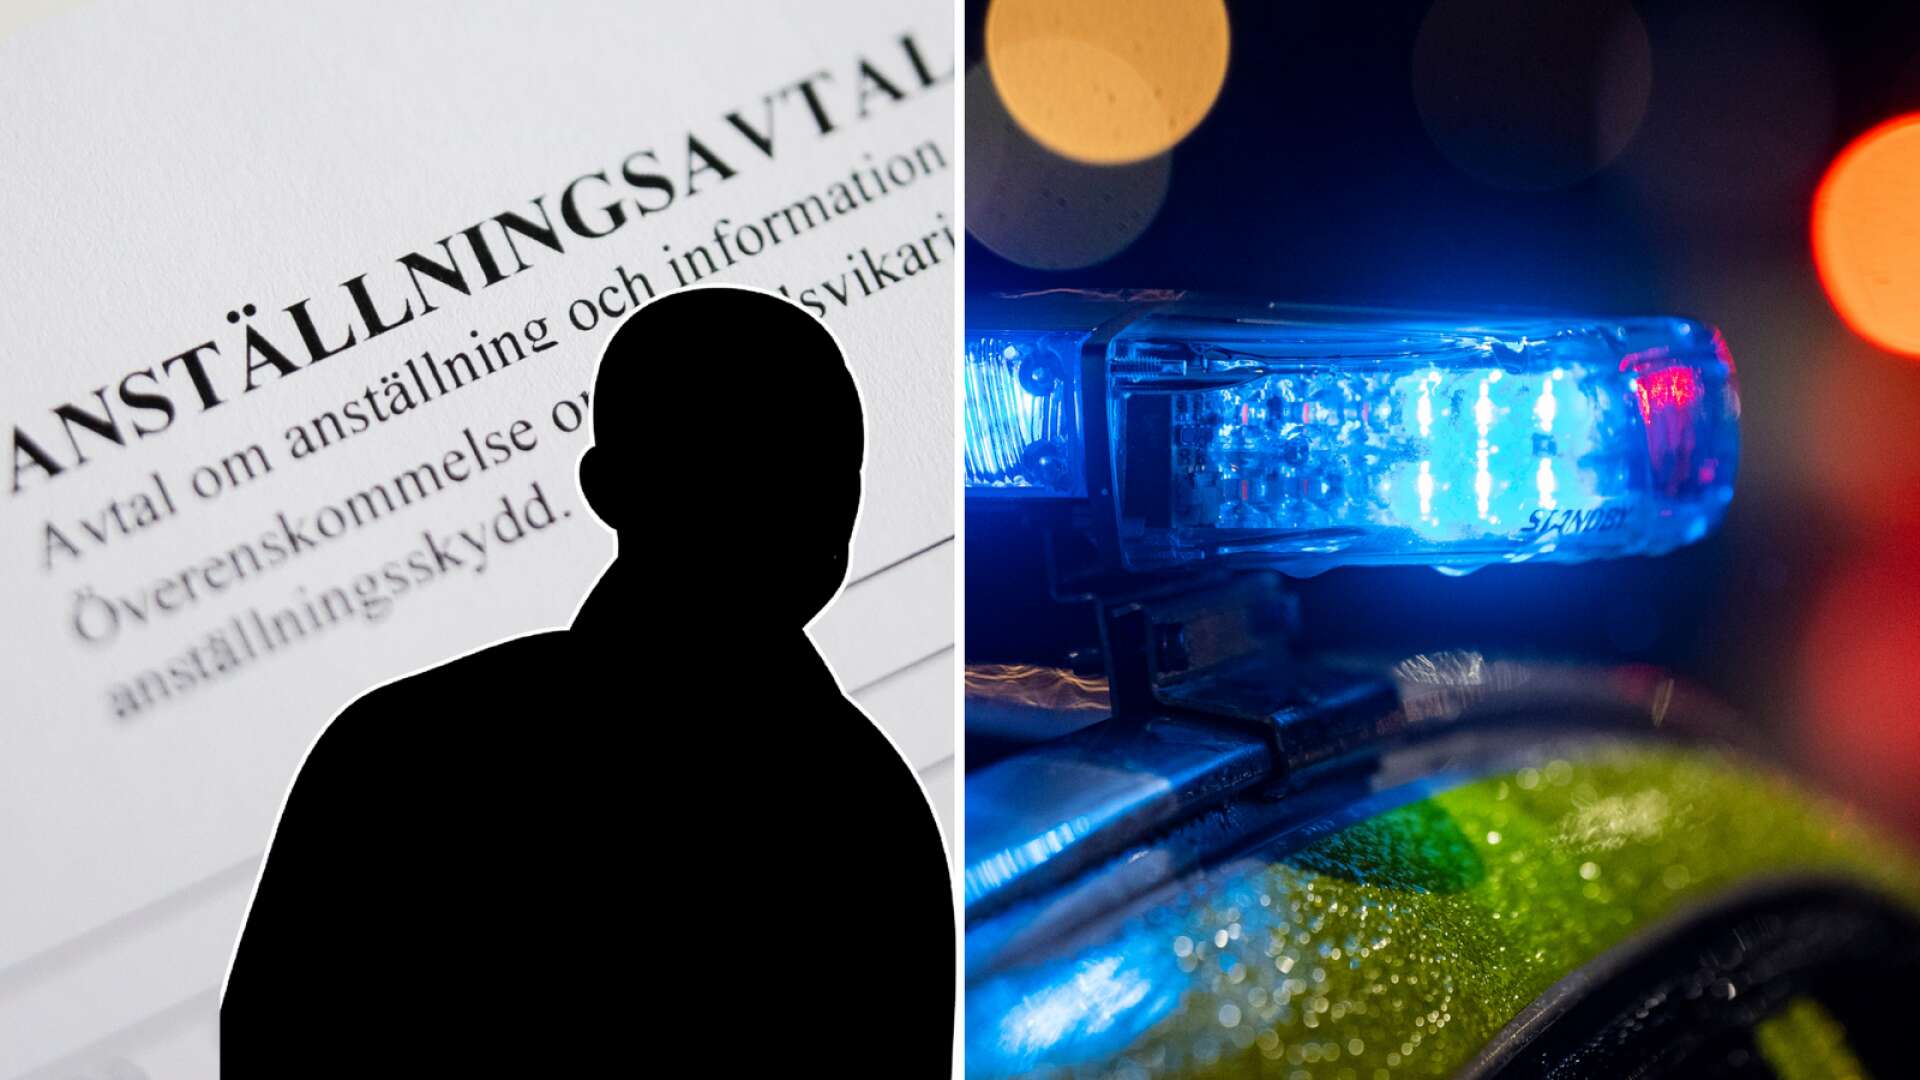 Åtalas misstänkt för brott mot utlänningslagen • Verksam i Arvika kommun